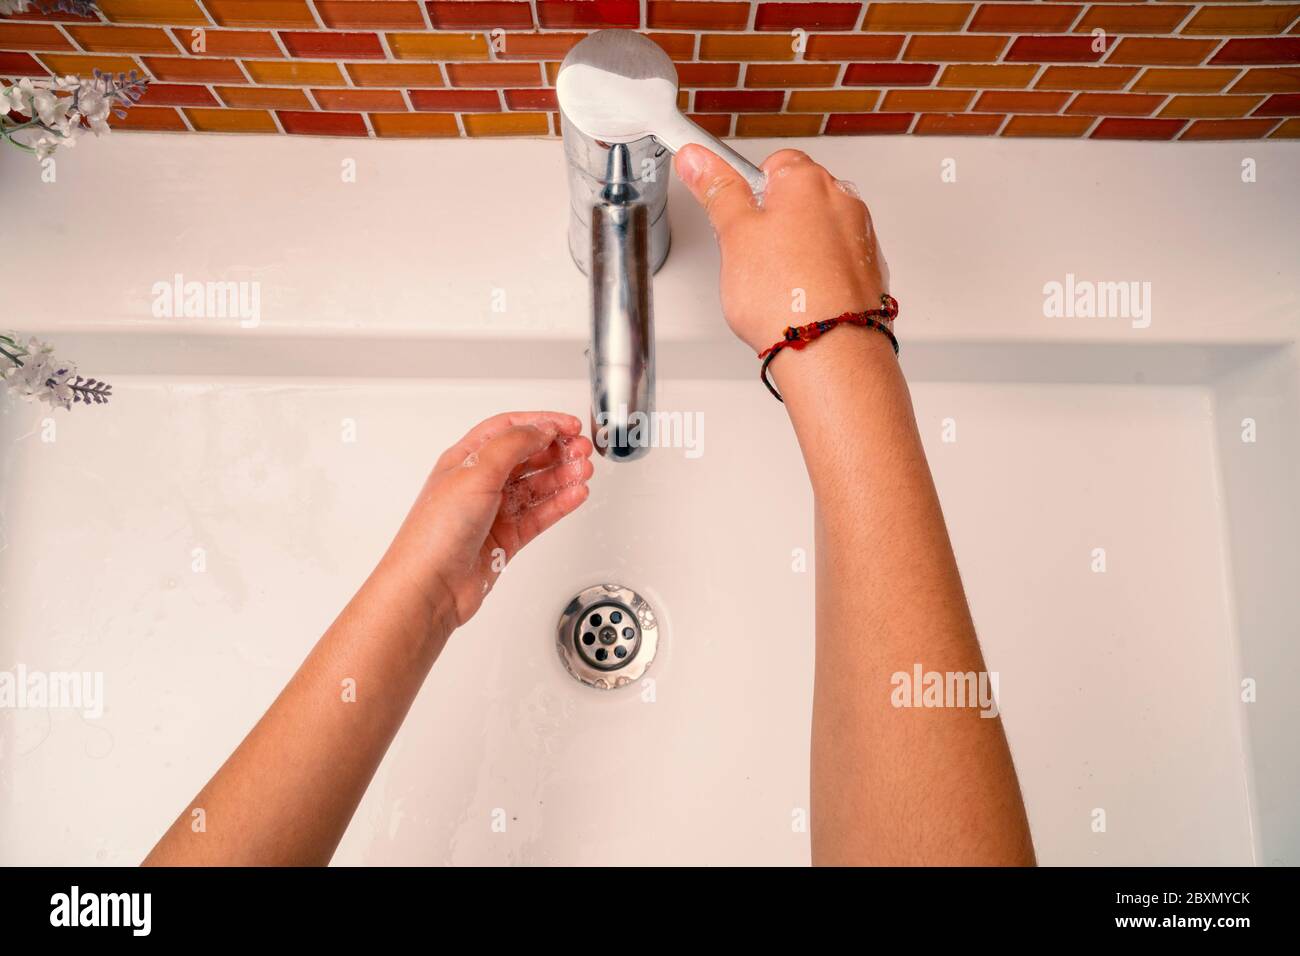 Kinder waschen Hand zur Desinfektion und Corona-Virus covid-19 Schutz. Stockfoto